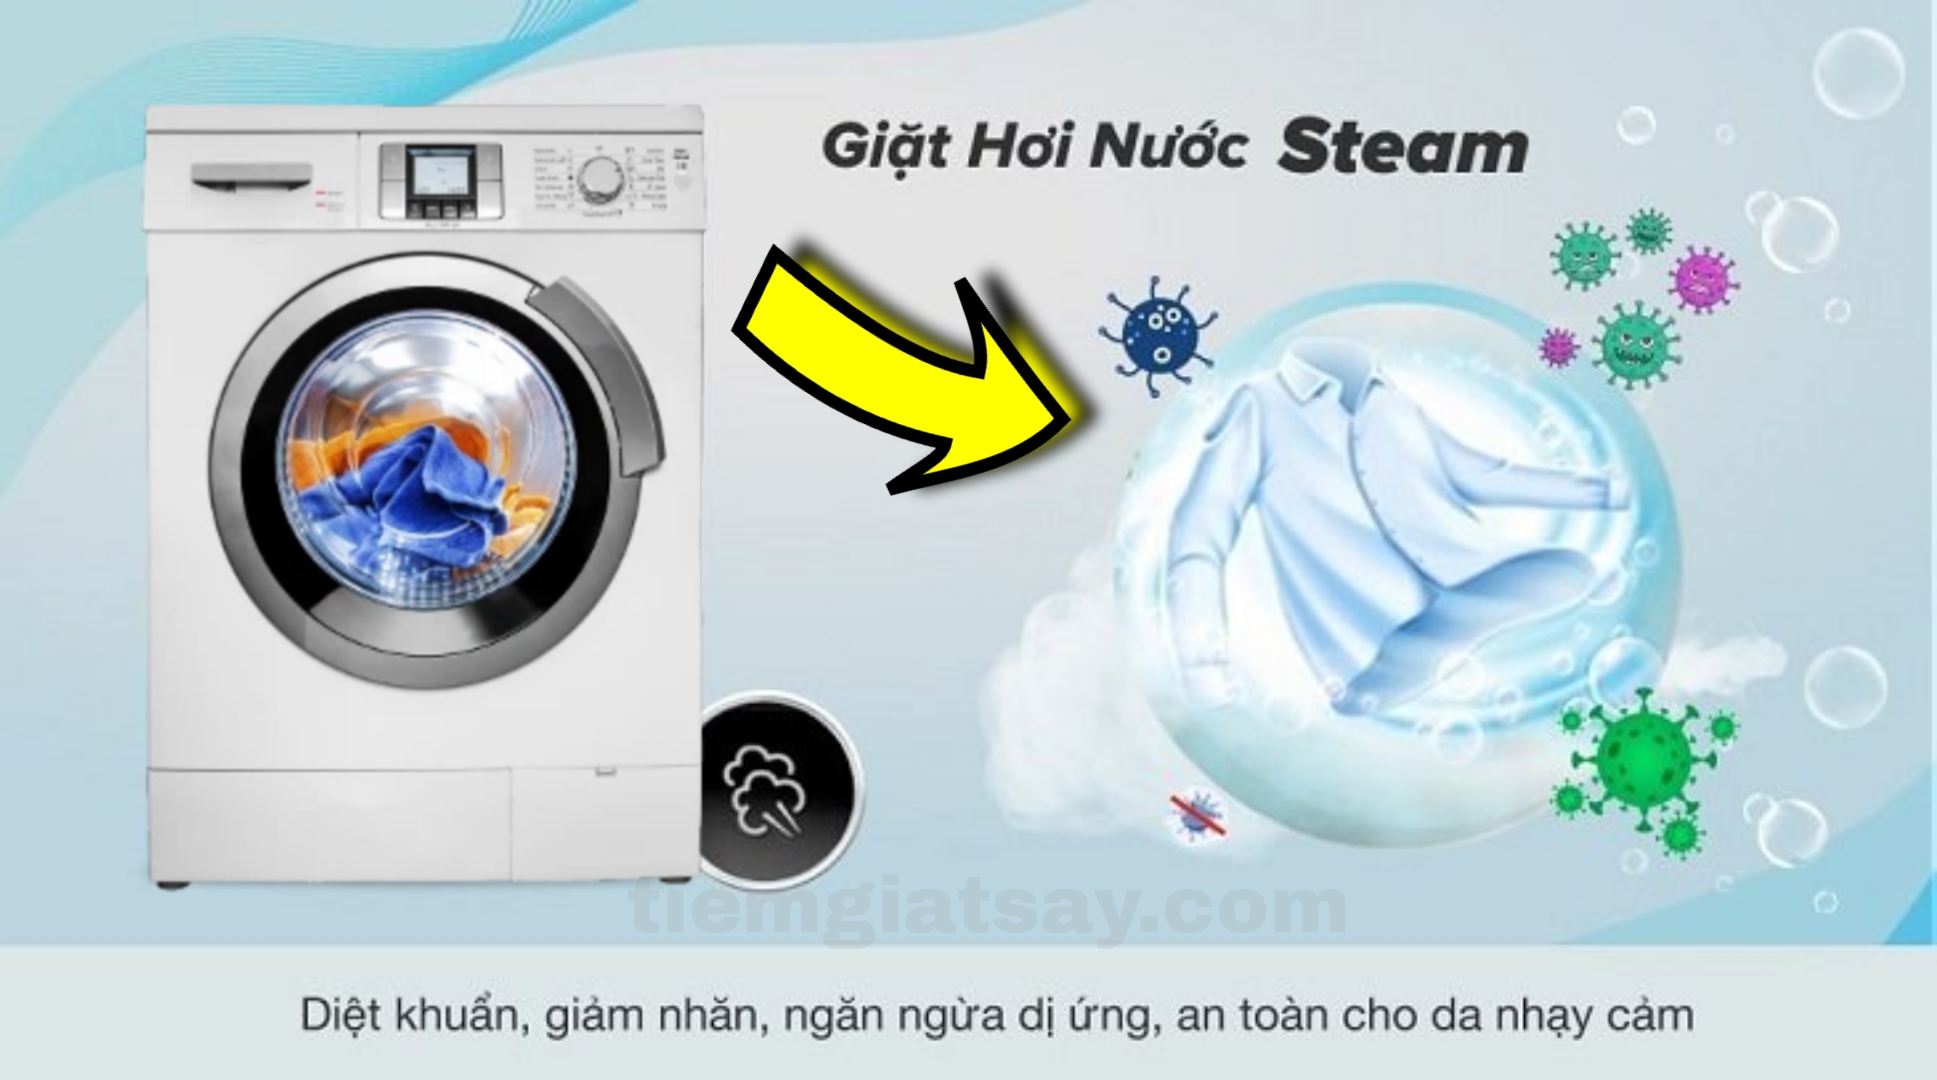 Tại sao nên sử dụng chế độ giặt nước nóng ? Công dụng của giặt nước nóng